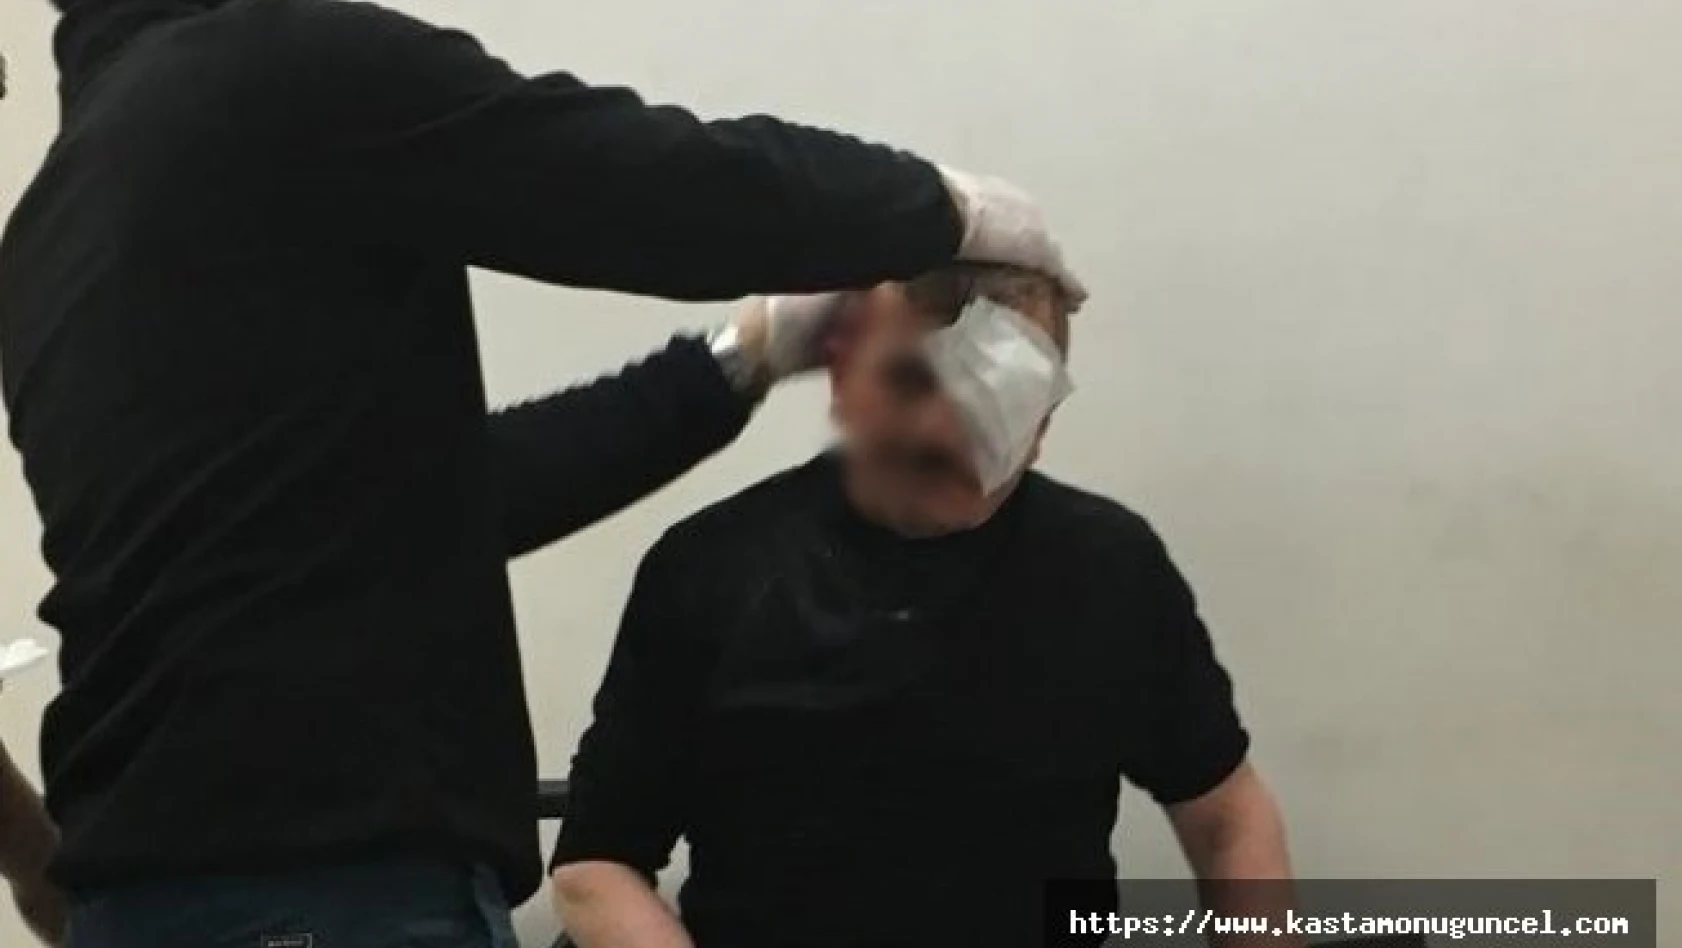 Kastamonu'da bıçaklı kavga: 1 kişi gözünden yaralandı